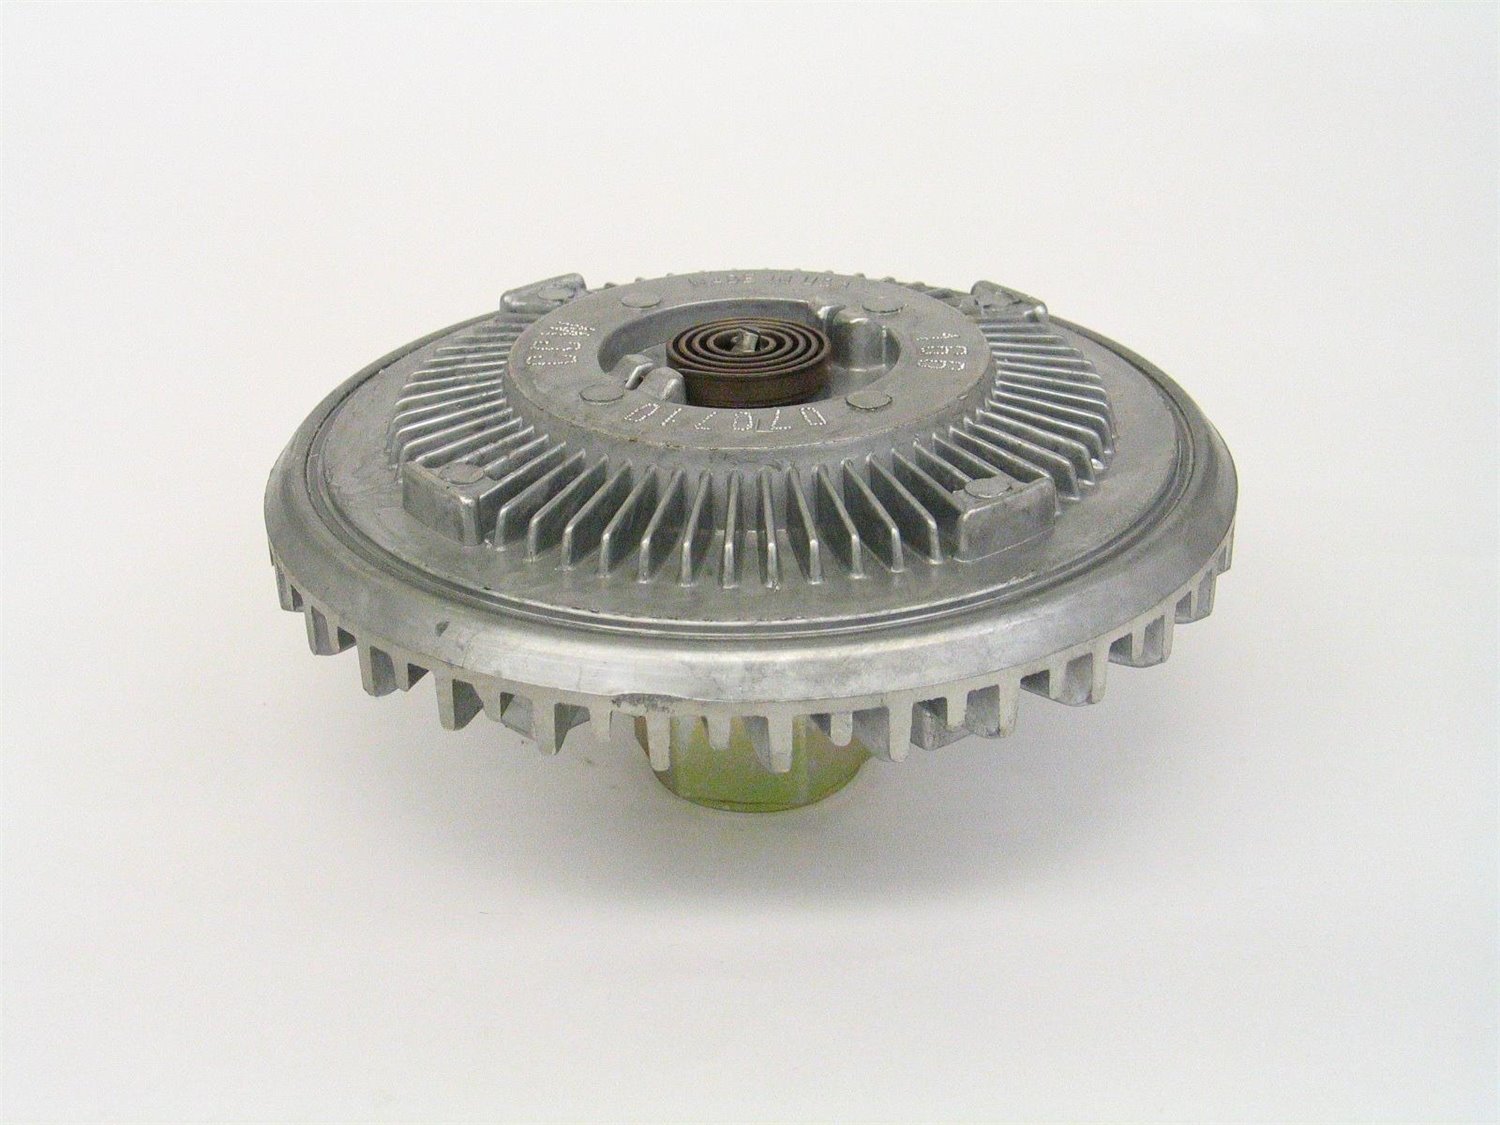 Standard Duty Thermal Fan Clutch for 1991-2011 Ford Explorer/Ranger 4.0L V6